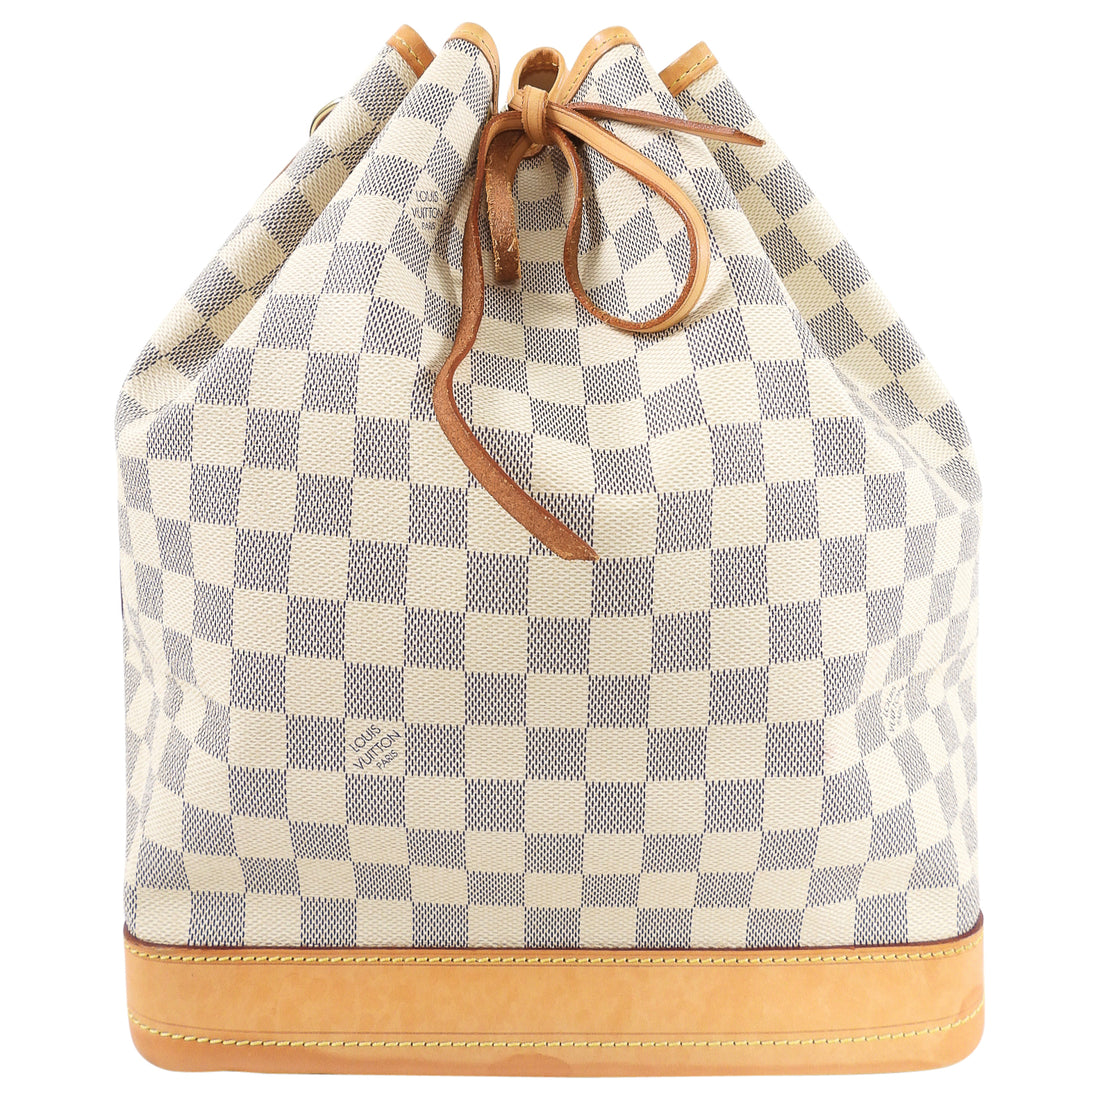 Louis Vuitton Damier Azur Noe Grande GM Drawstring Bag – I MISS